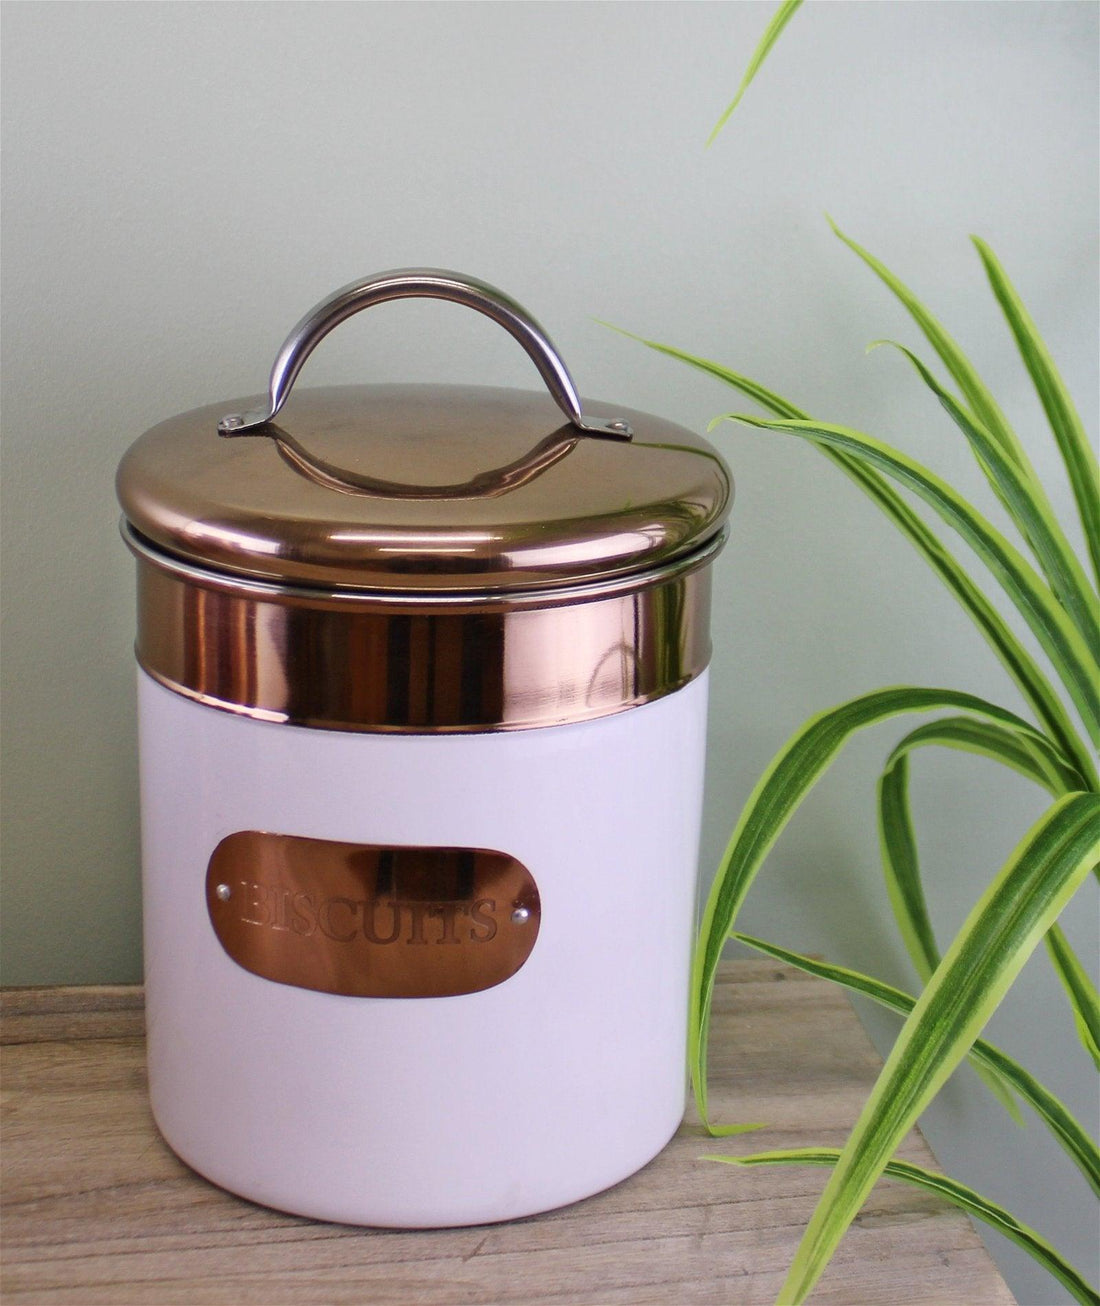 Biscuit Tin, Copper & White Metal Design - £34.99 - Kitchen Storage 